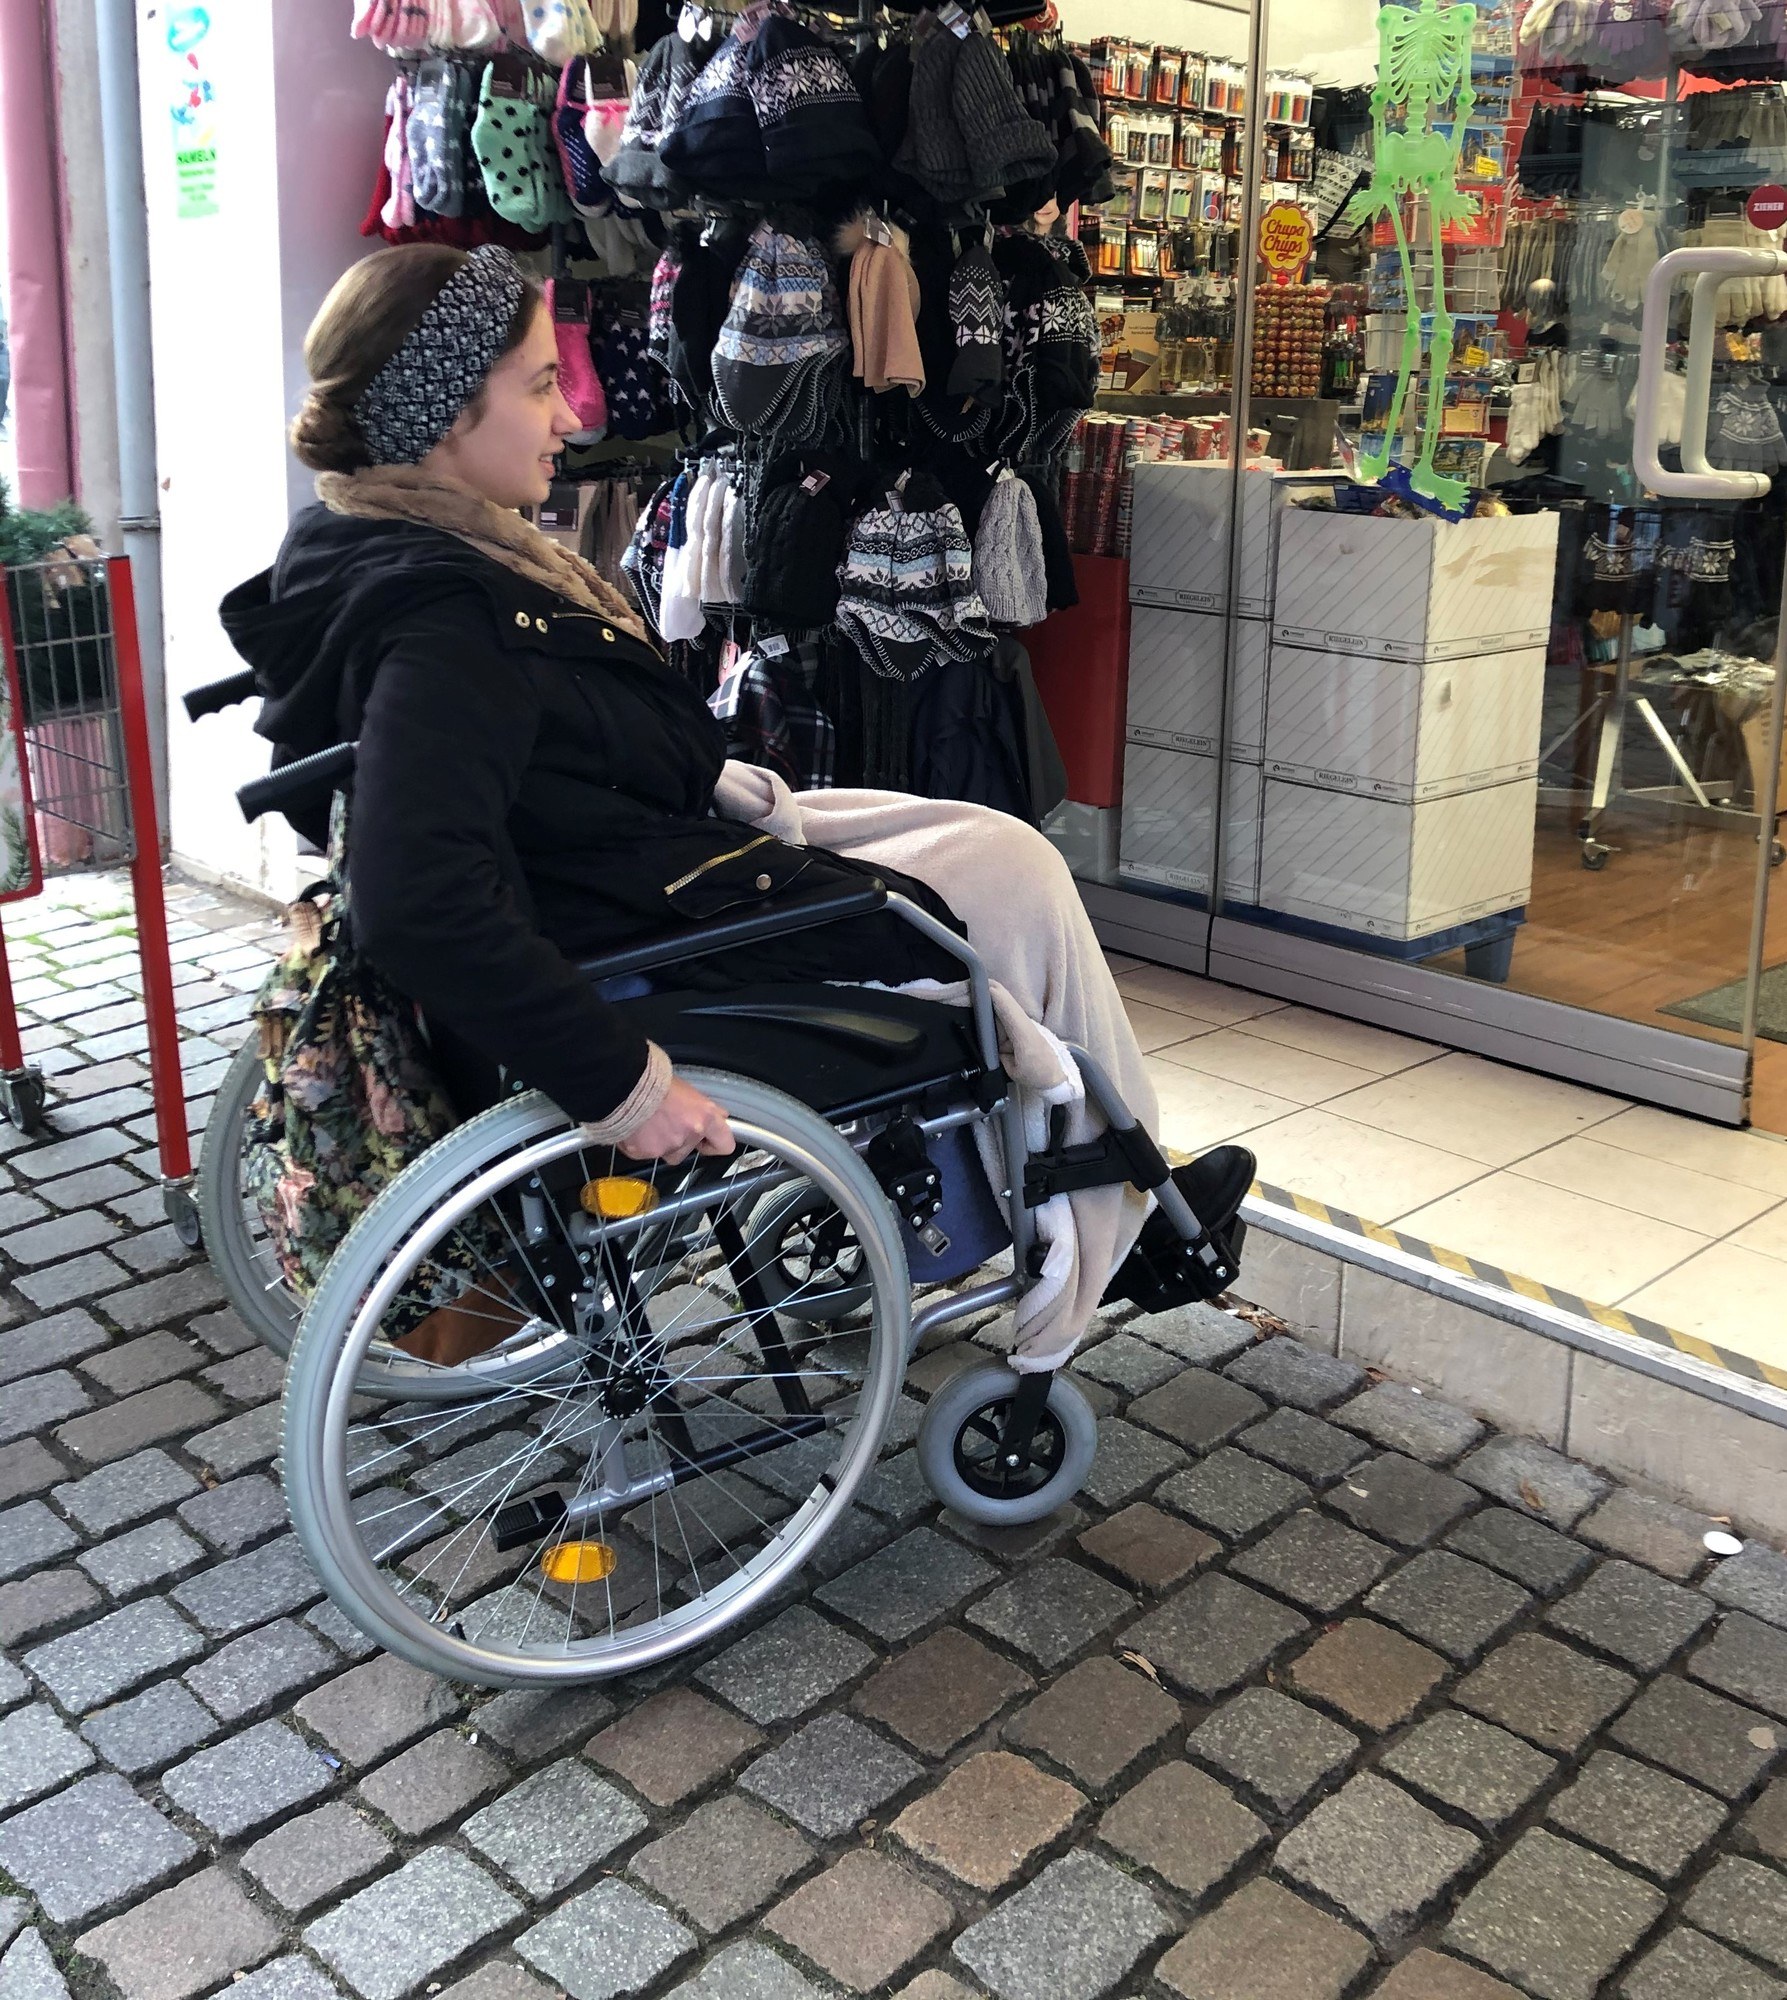 Abgefahren: Die besten Helfer für Rollstuhlfahrer